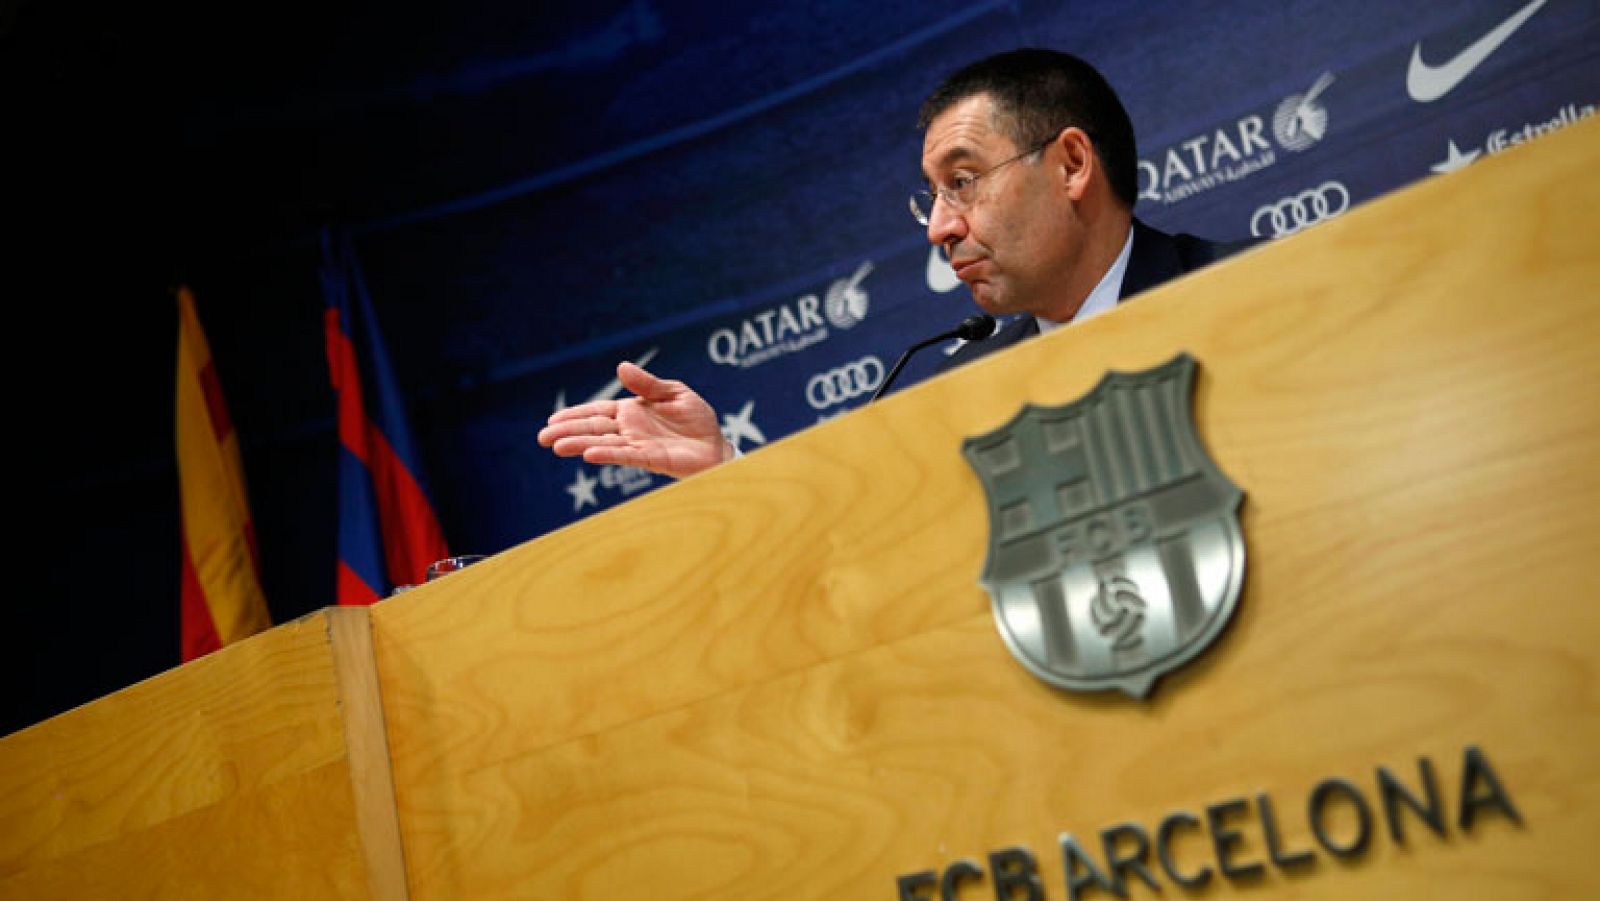 Telediario 1: El presidente del Barça dice que "no hay madriditis" | RTVE Play